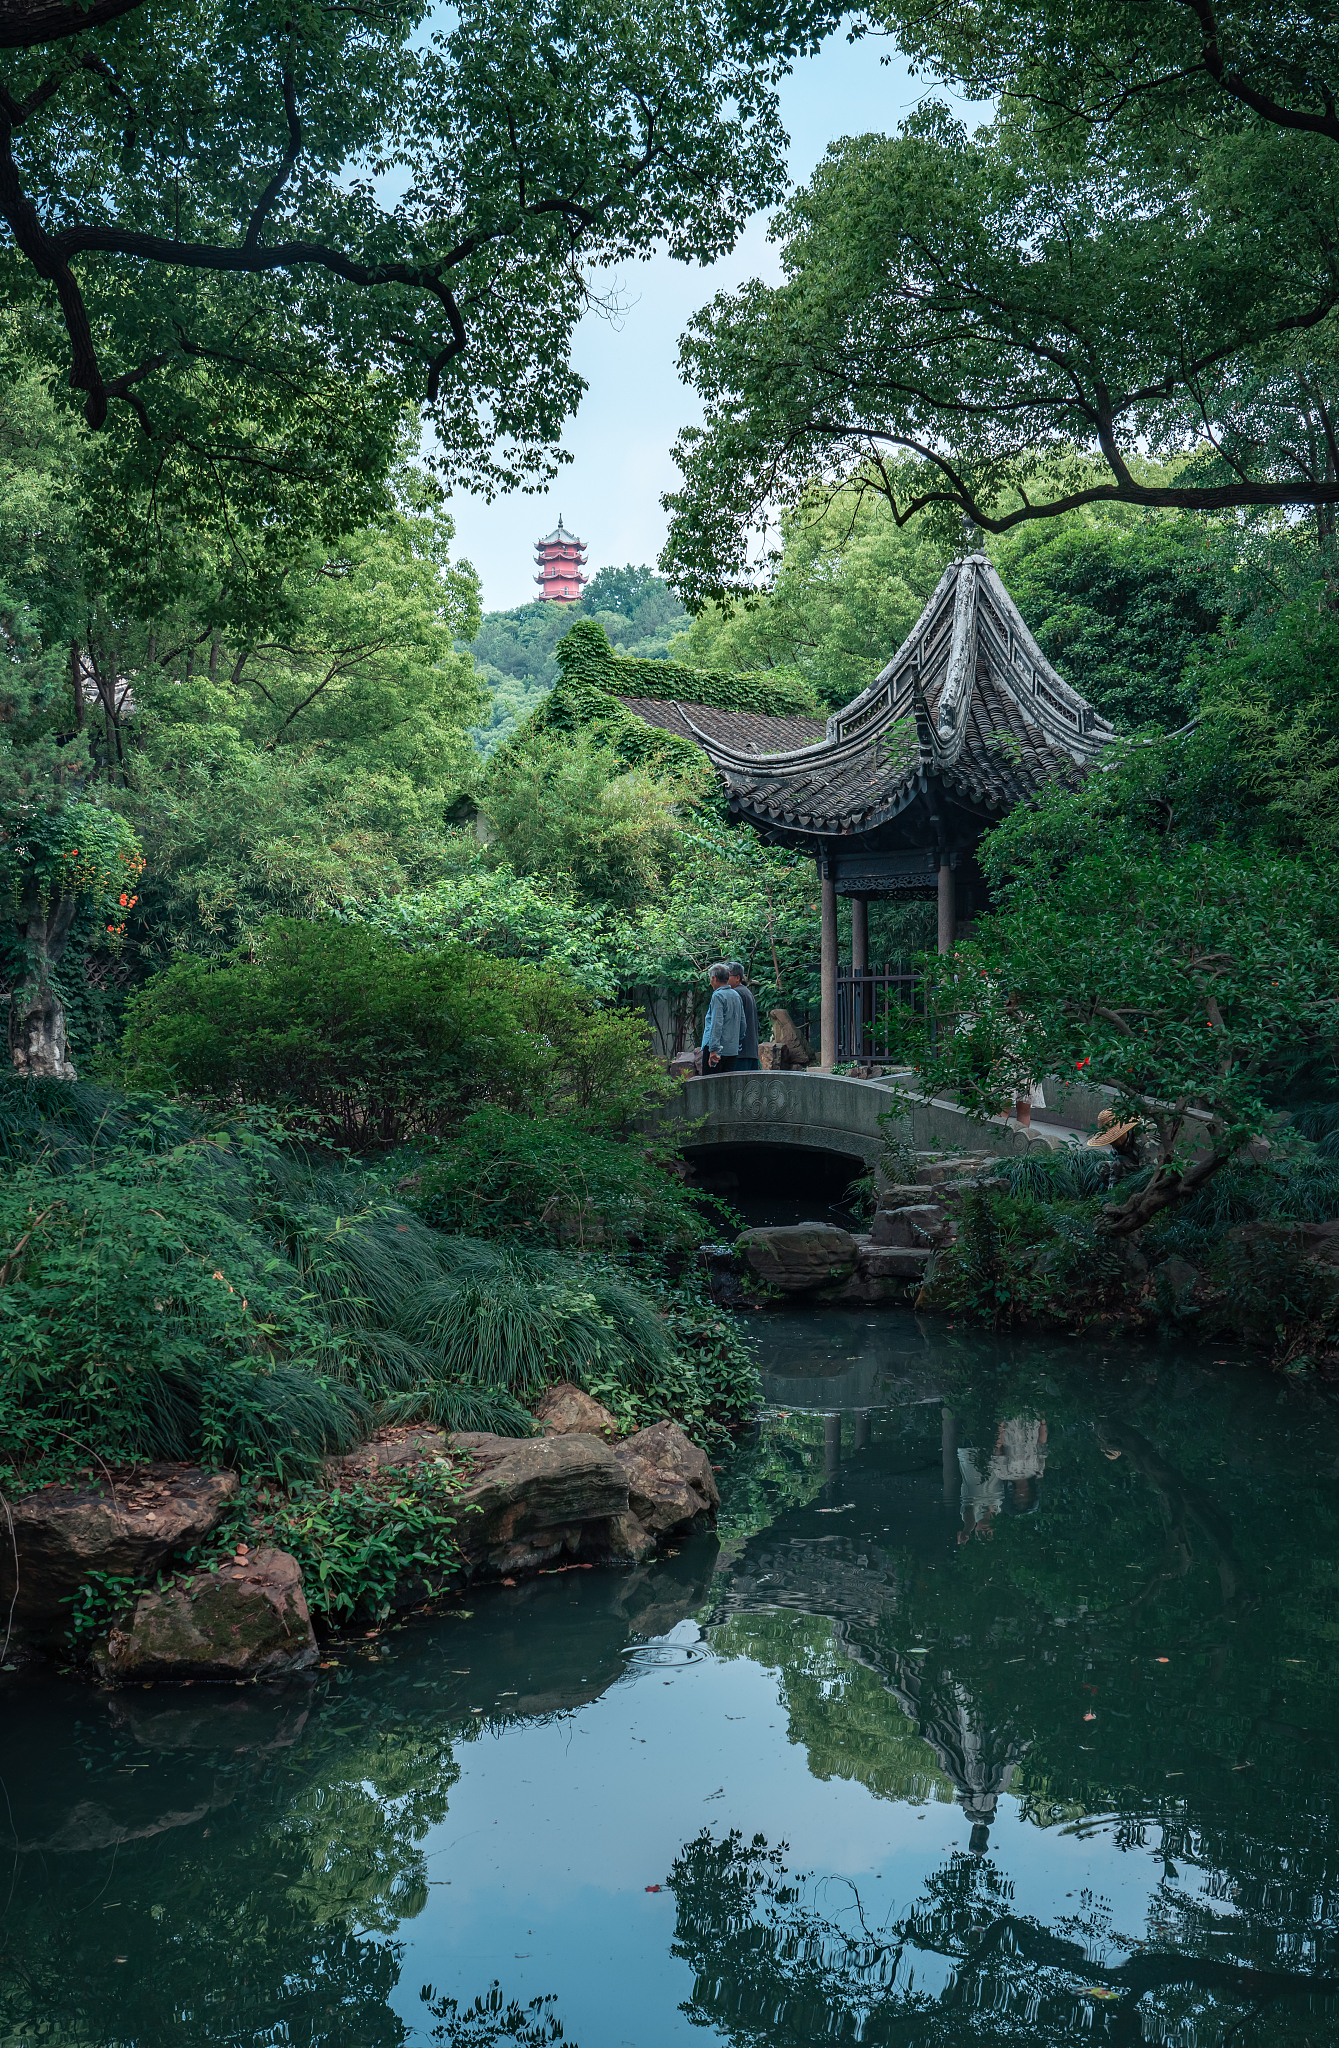 Classical Chinese garden in Wuxi, east China's Jiangsu Province. /CFP